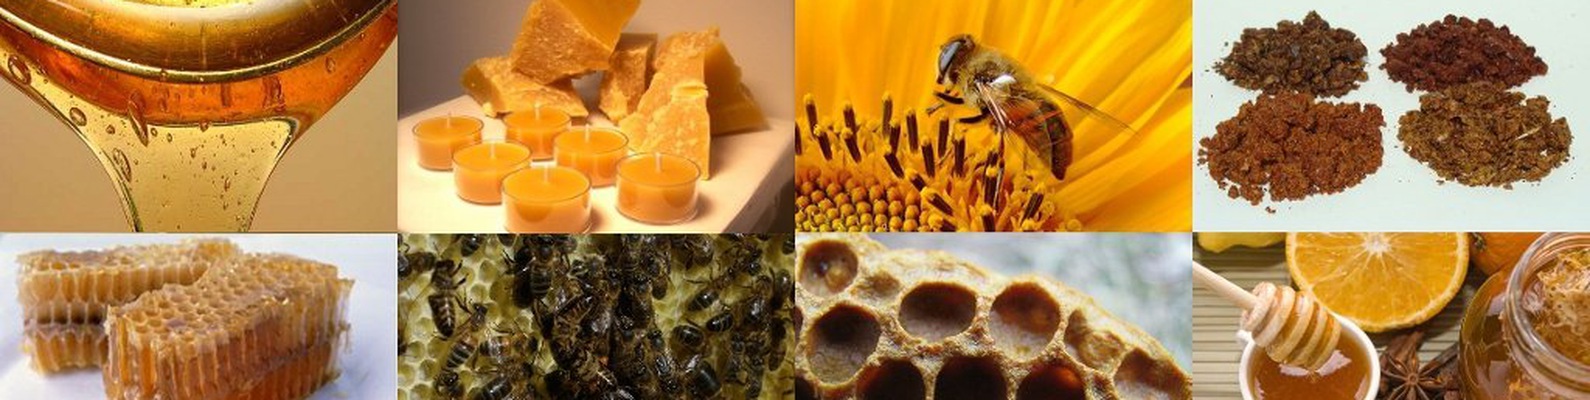 Продукты пчеловодства и их использование